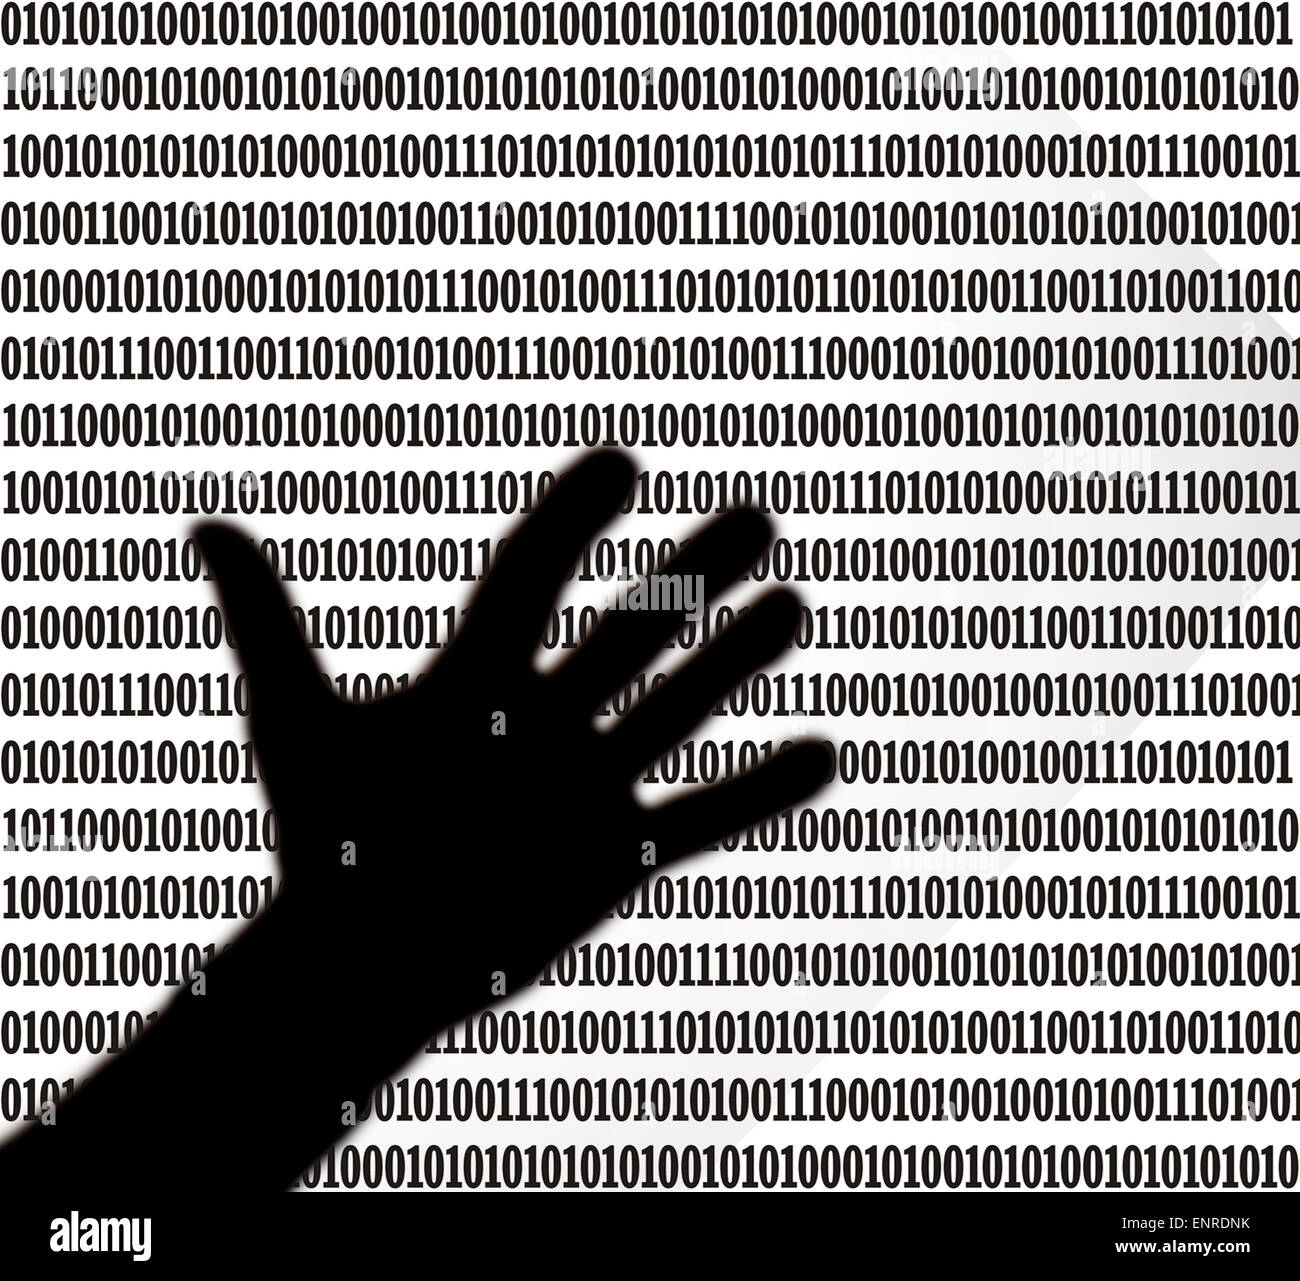 Siluetas de mano flotando sobre una hoja de código binario Foto de stock